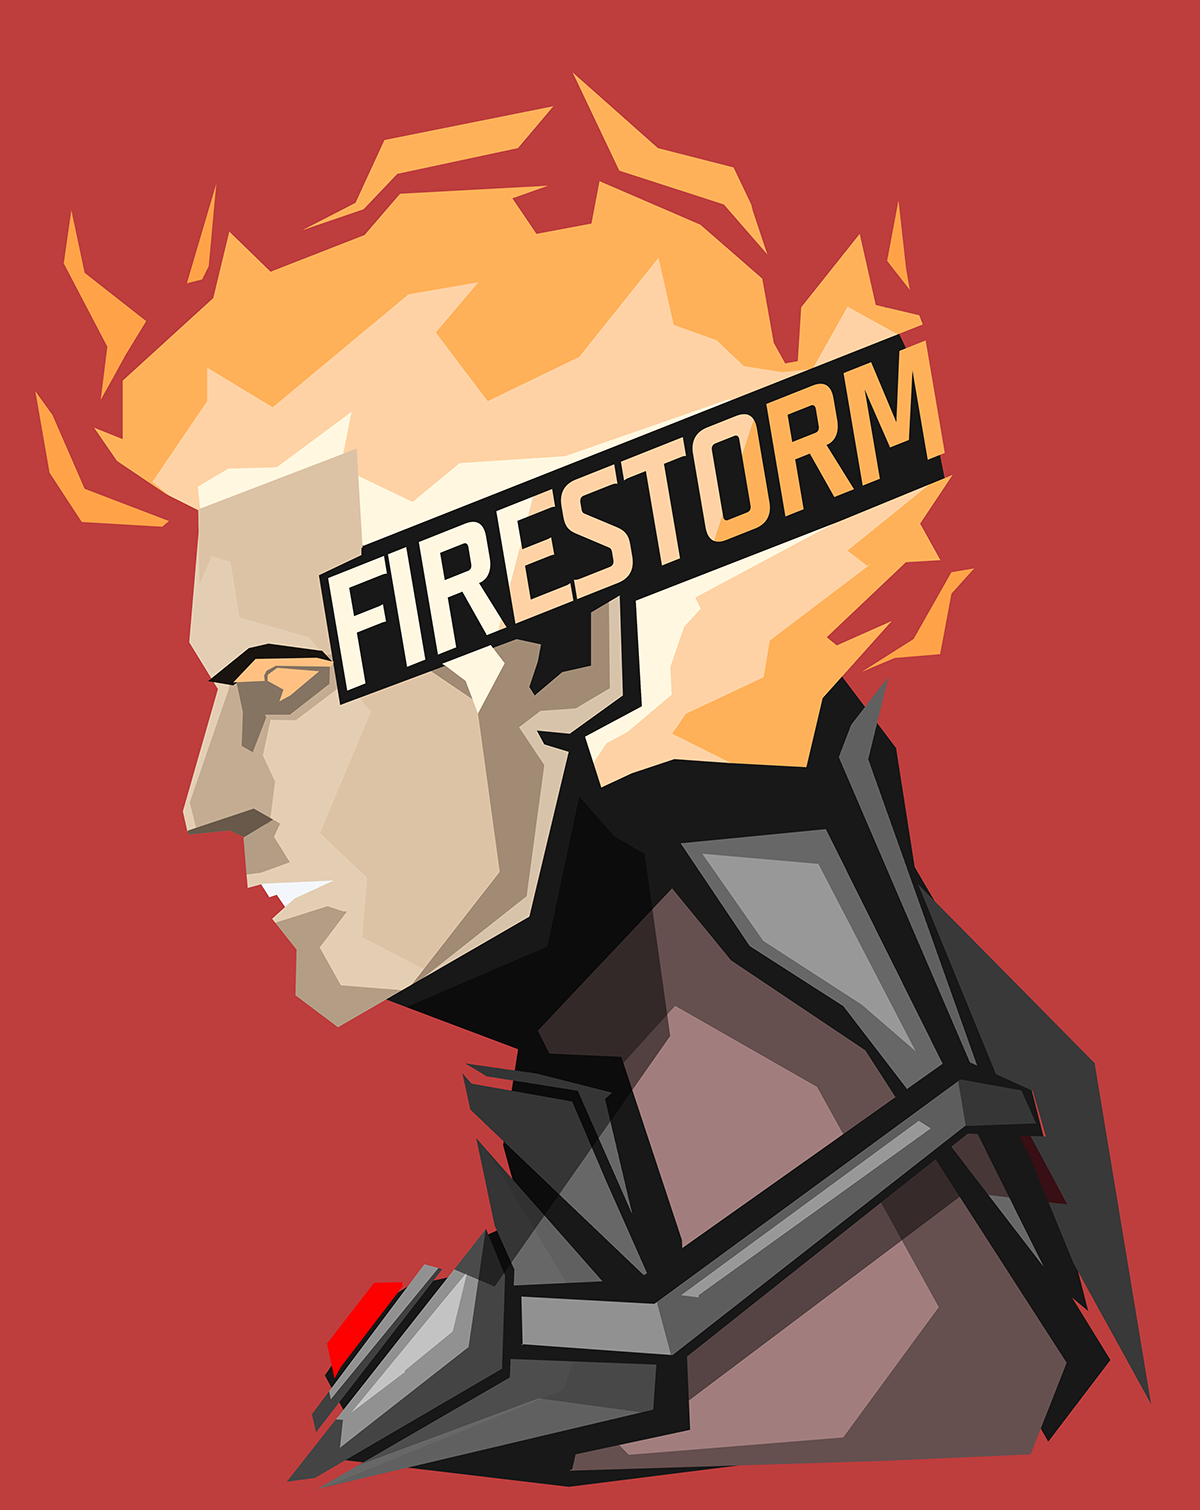 fond d'écran firestorm,dessin animé,personnage fictif,illustration,affiche,police de caractère